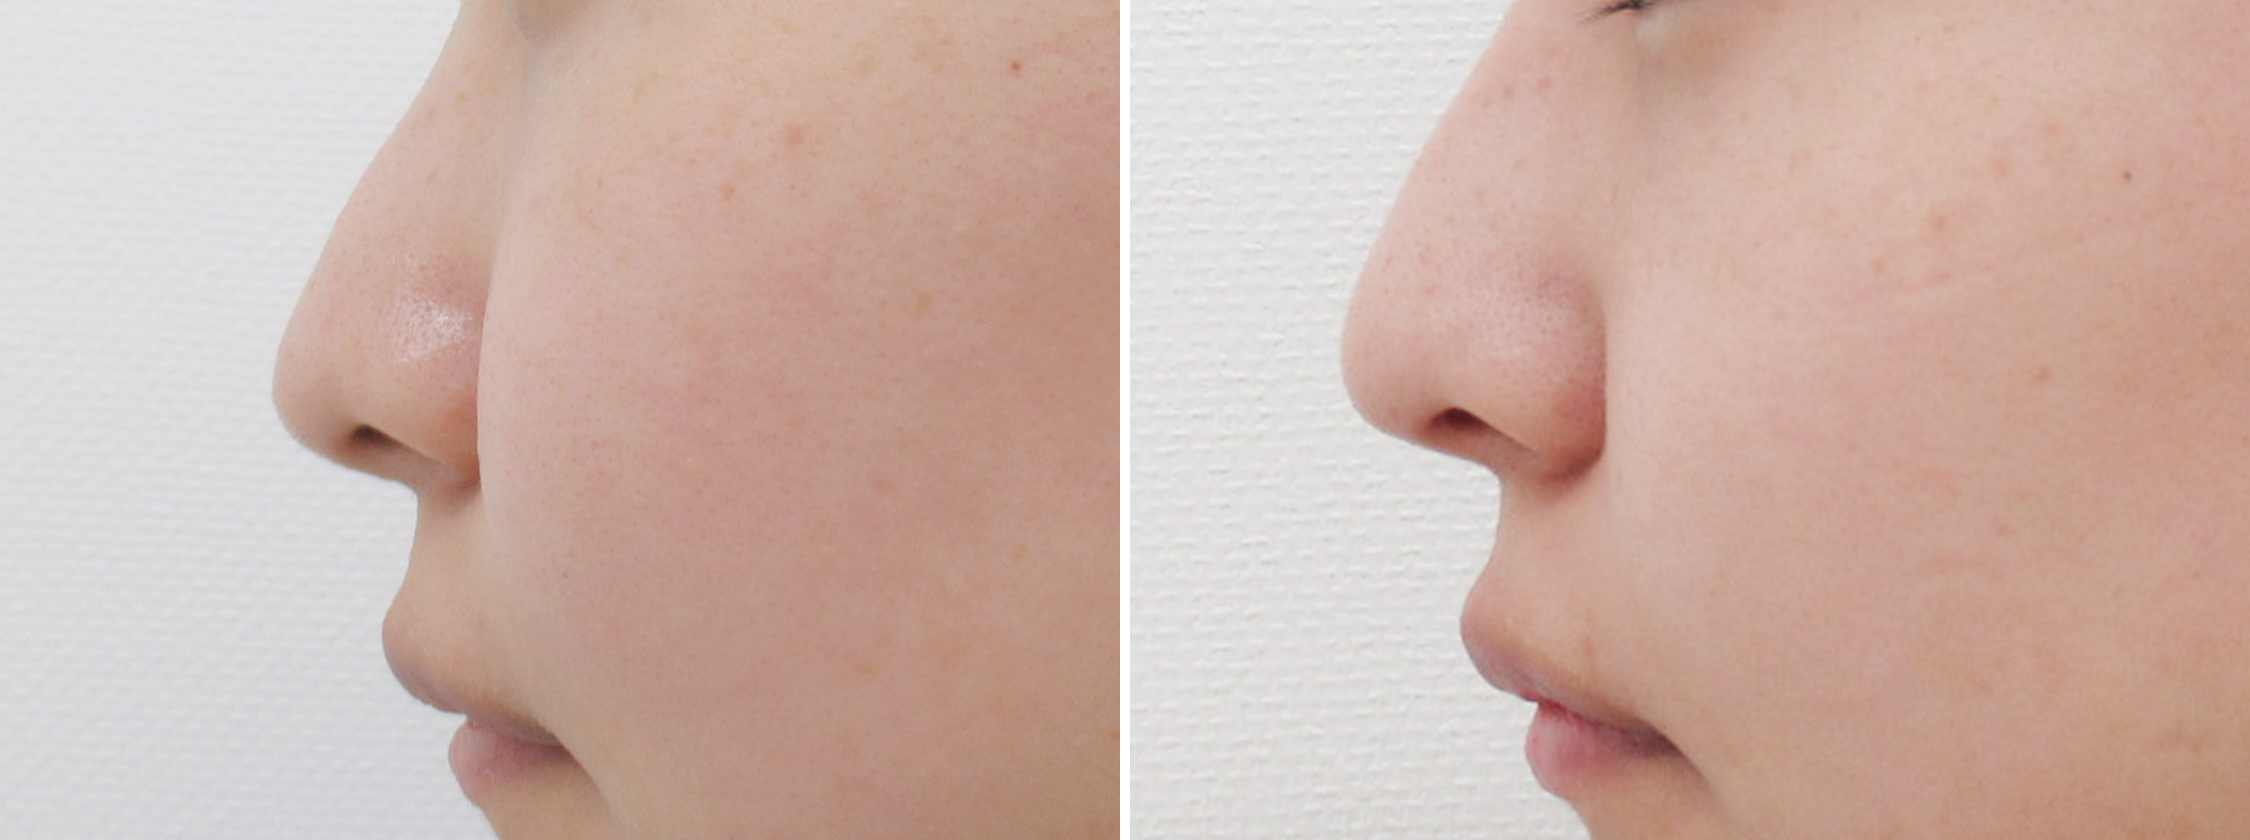 鼻尖4dノーズの症例 鼻整形 小鼻整形の症例情報一覧 ダウンタイム Taクリニック 美容整形 美容外科